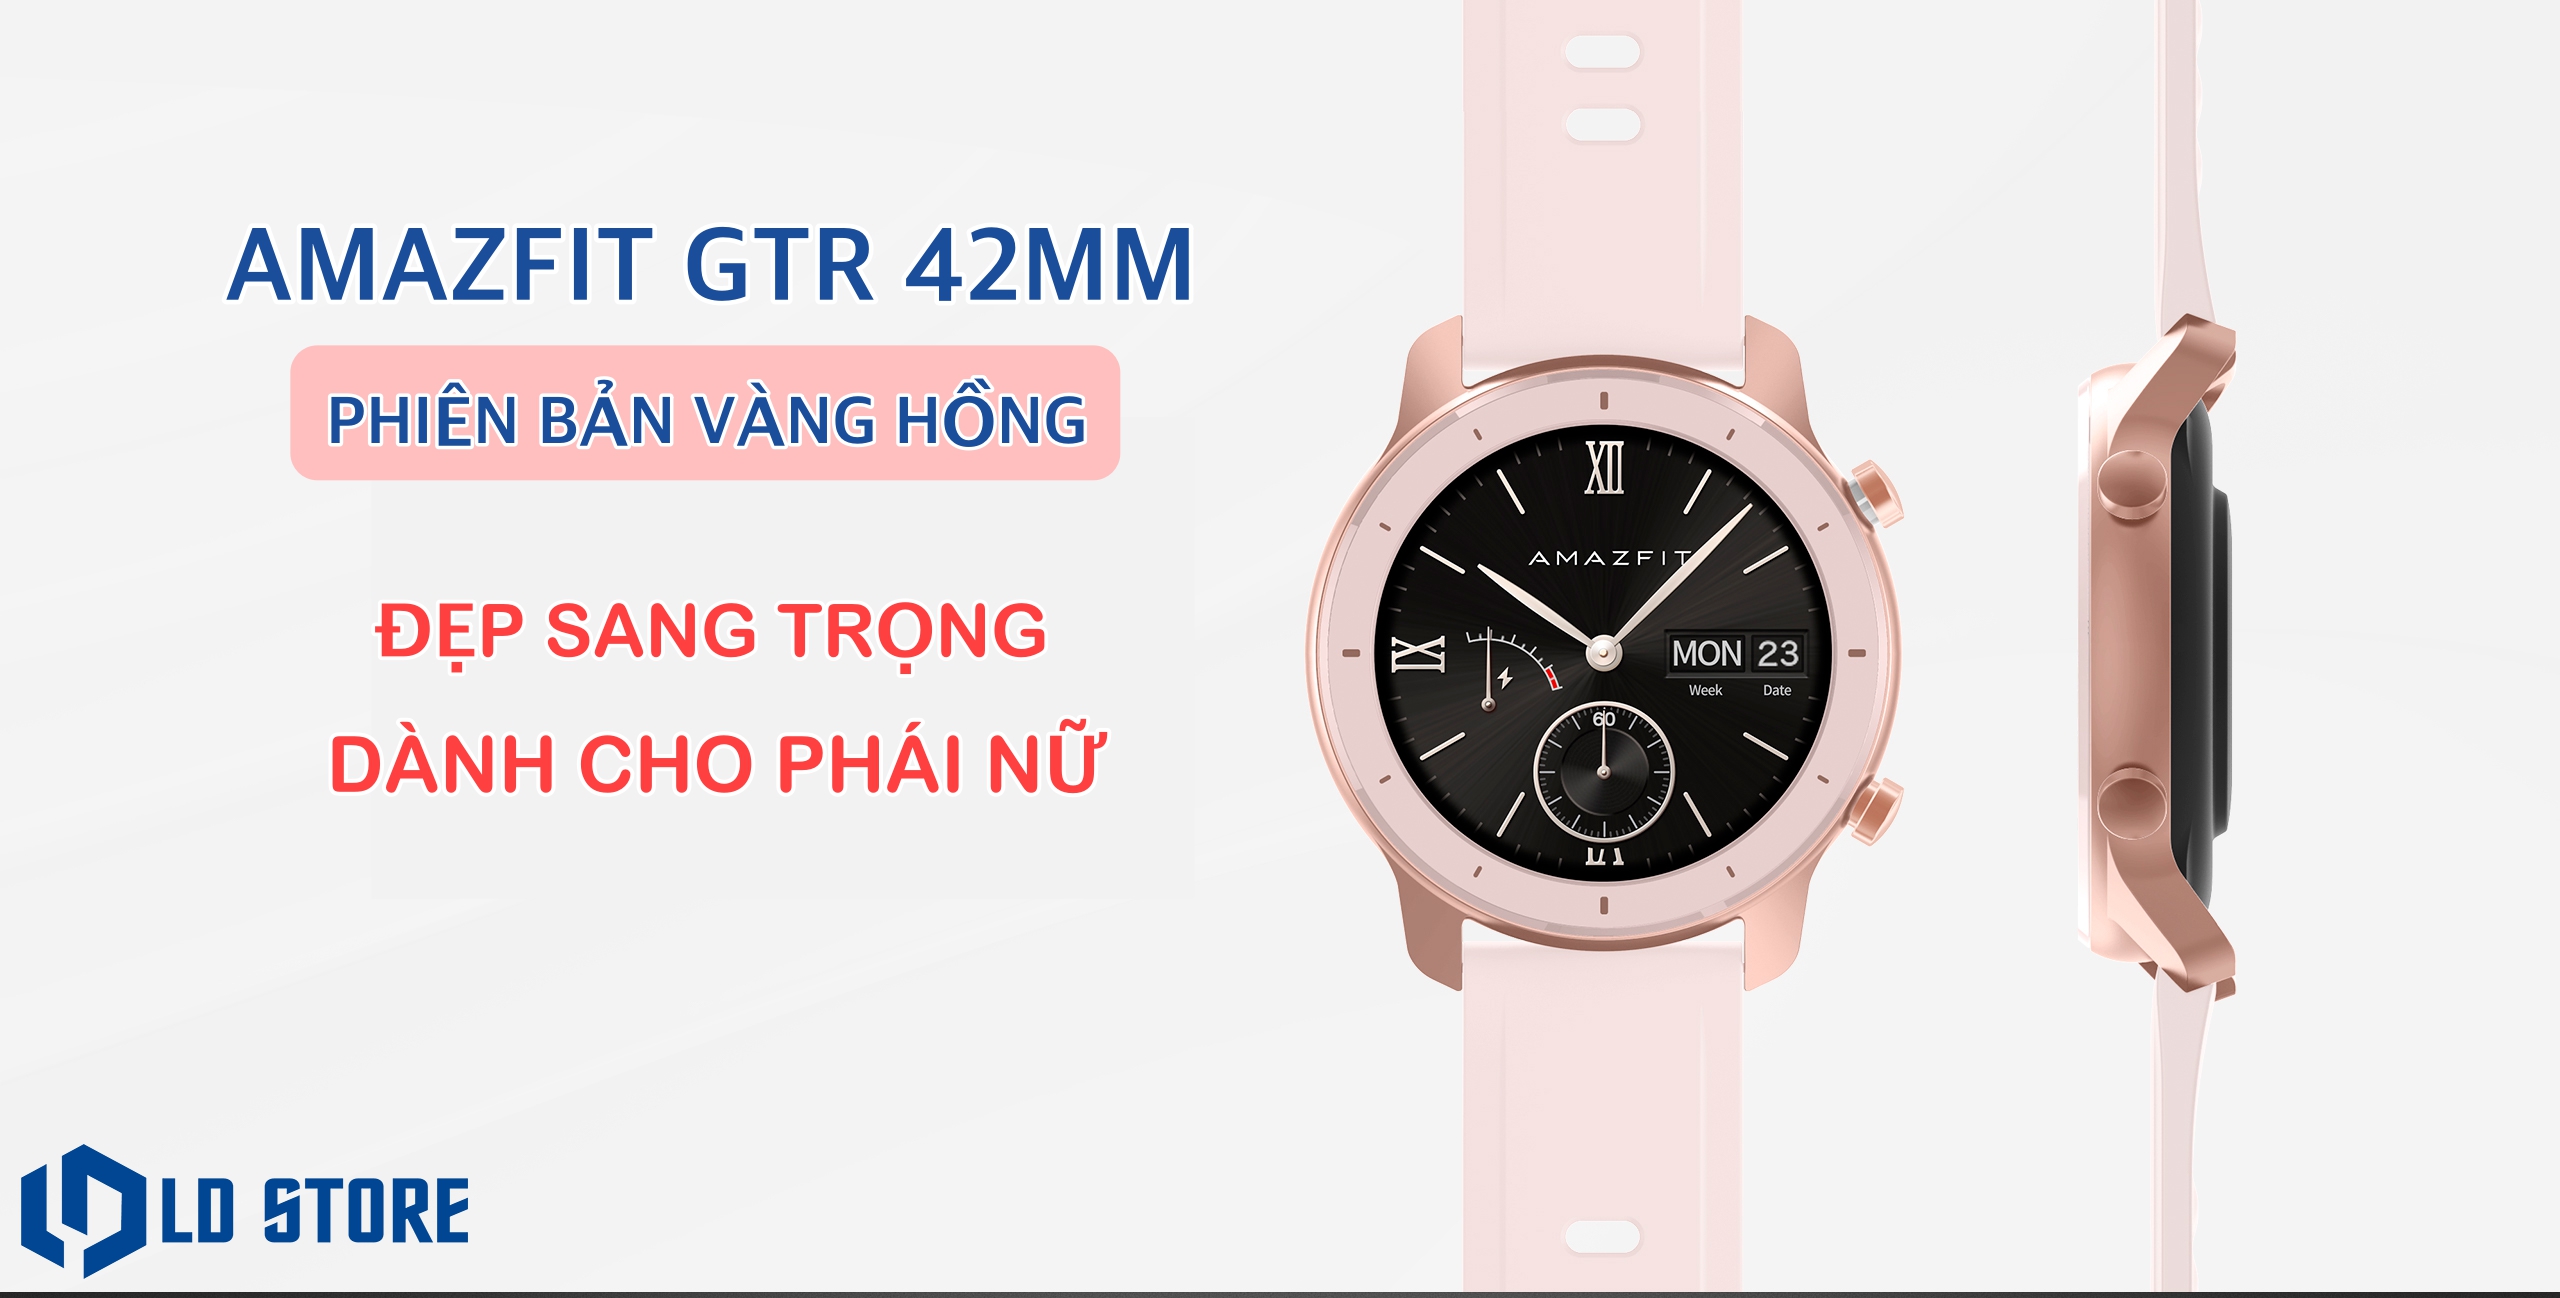 Amazfit GTR: Amazfit GTR - sản phẩm đồng hồ thông minh rất được mong chờ. Thiết kế đơn giản và sang trọng, màn hình AMOLED sắc nét, bền bỉ và có nhiều tính năng thông minh. Khả năng chống nước tốt, dùng lâu và có nhiều phiên bản màu sắc đa dạng. Đây sẽ là một sản phẩm hoàn hảo cho người yêu công nghệ.